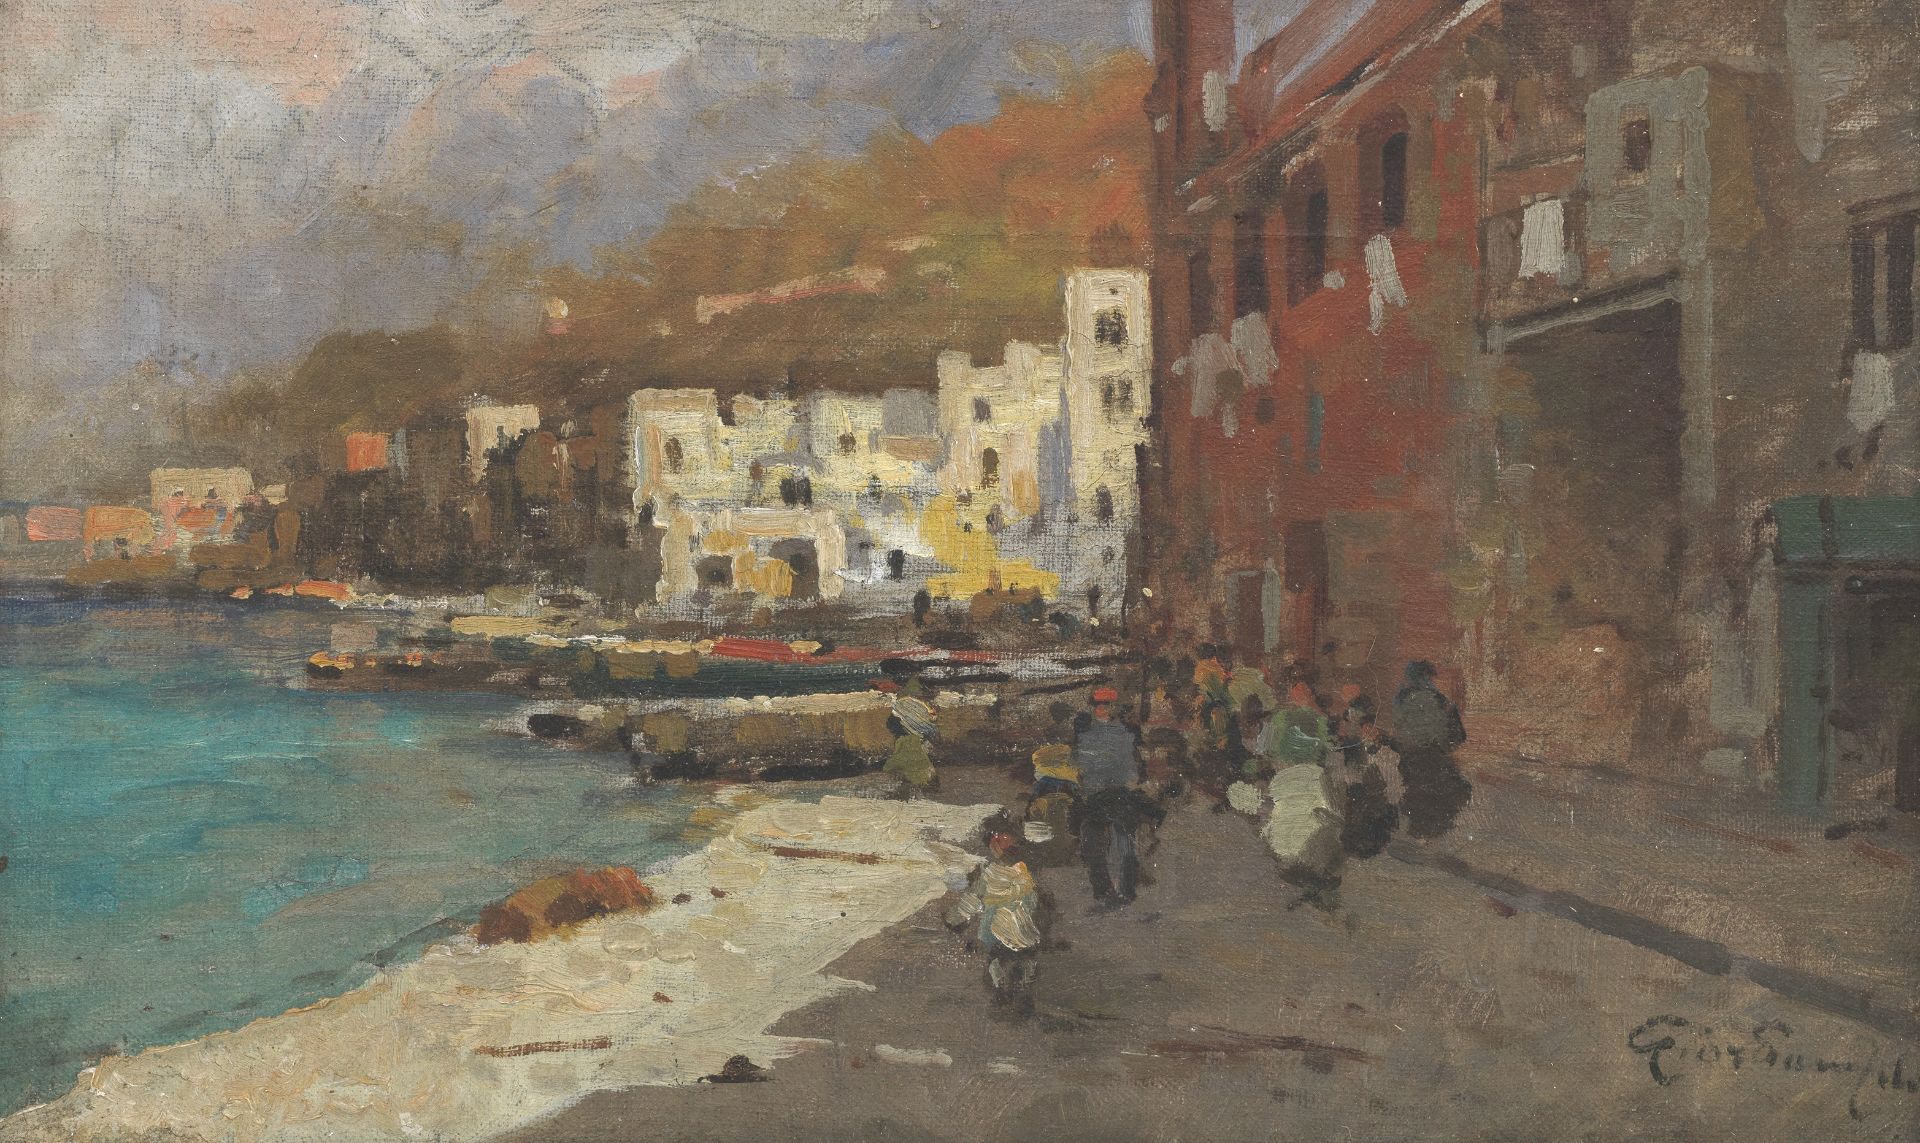 Felice Giordano (Italian, 1880-1964) A busy harbour town